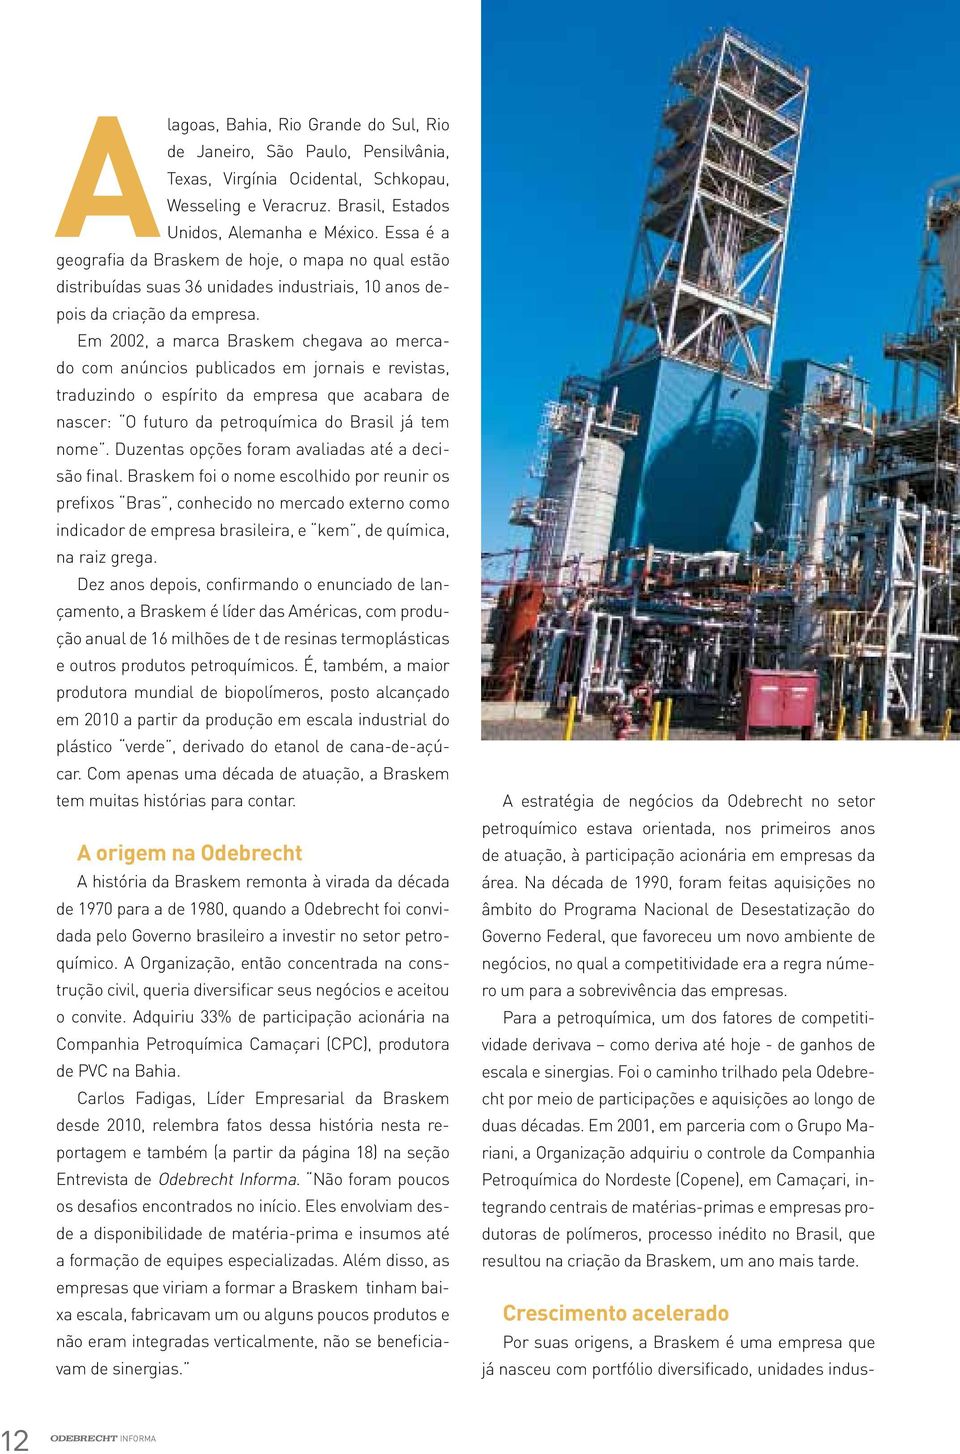 Em 2002, a marca Braskem chegava ao mercado com anúncios publicados em jornais e revistas, traduzindo o espírito da empresa que acabara de nascer: O futuro da petroquímica do Brasil já tem nome.